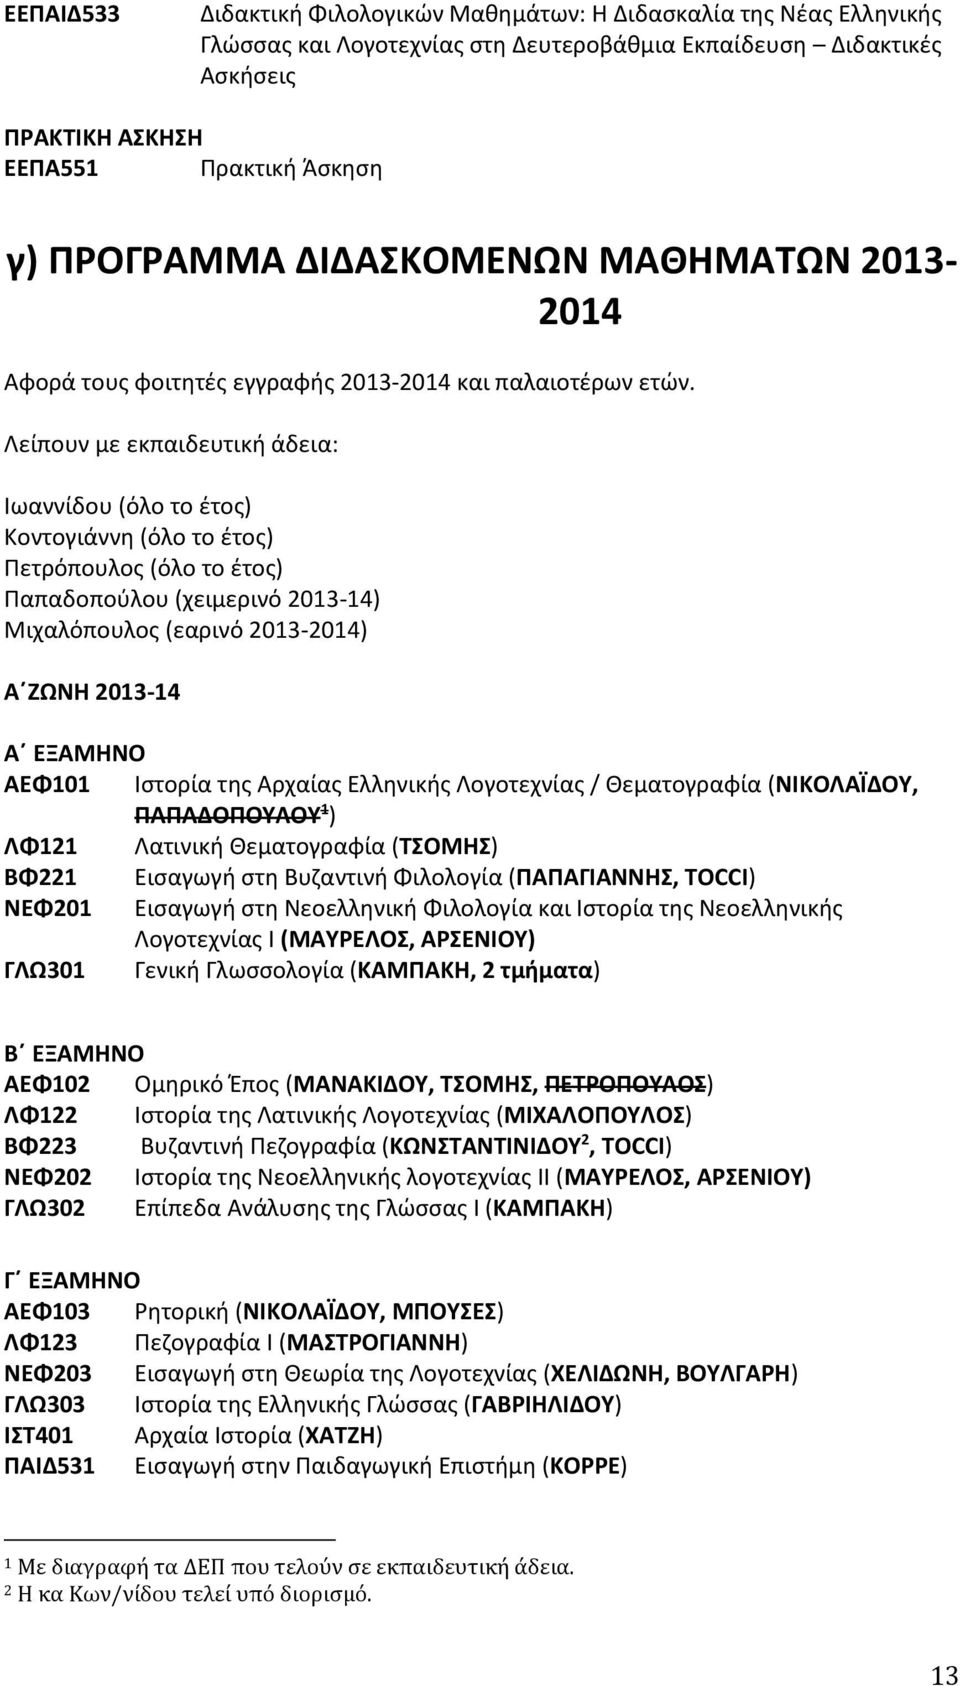 Λείπουν με εκπαιδευτική άδεια: Ιωαννίδου (όλο το έτος) Κοντογιάννη (όλο το έτος) Πετρόπουλος (όλο το έτος) Παπαδοπούλου (χειμερινό 2013-14) Μιχαλόπουλος (εαρινό 2013-2014) Α ΖΩΝΗ 2013-14 A ΕΞΑΜΗΝΟ